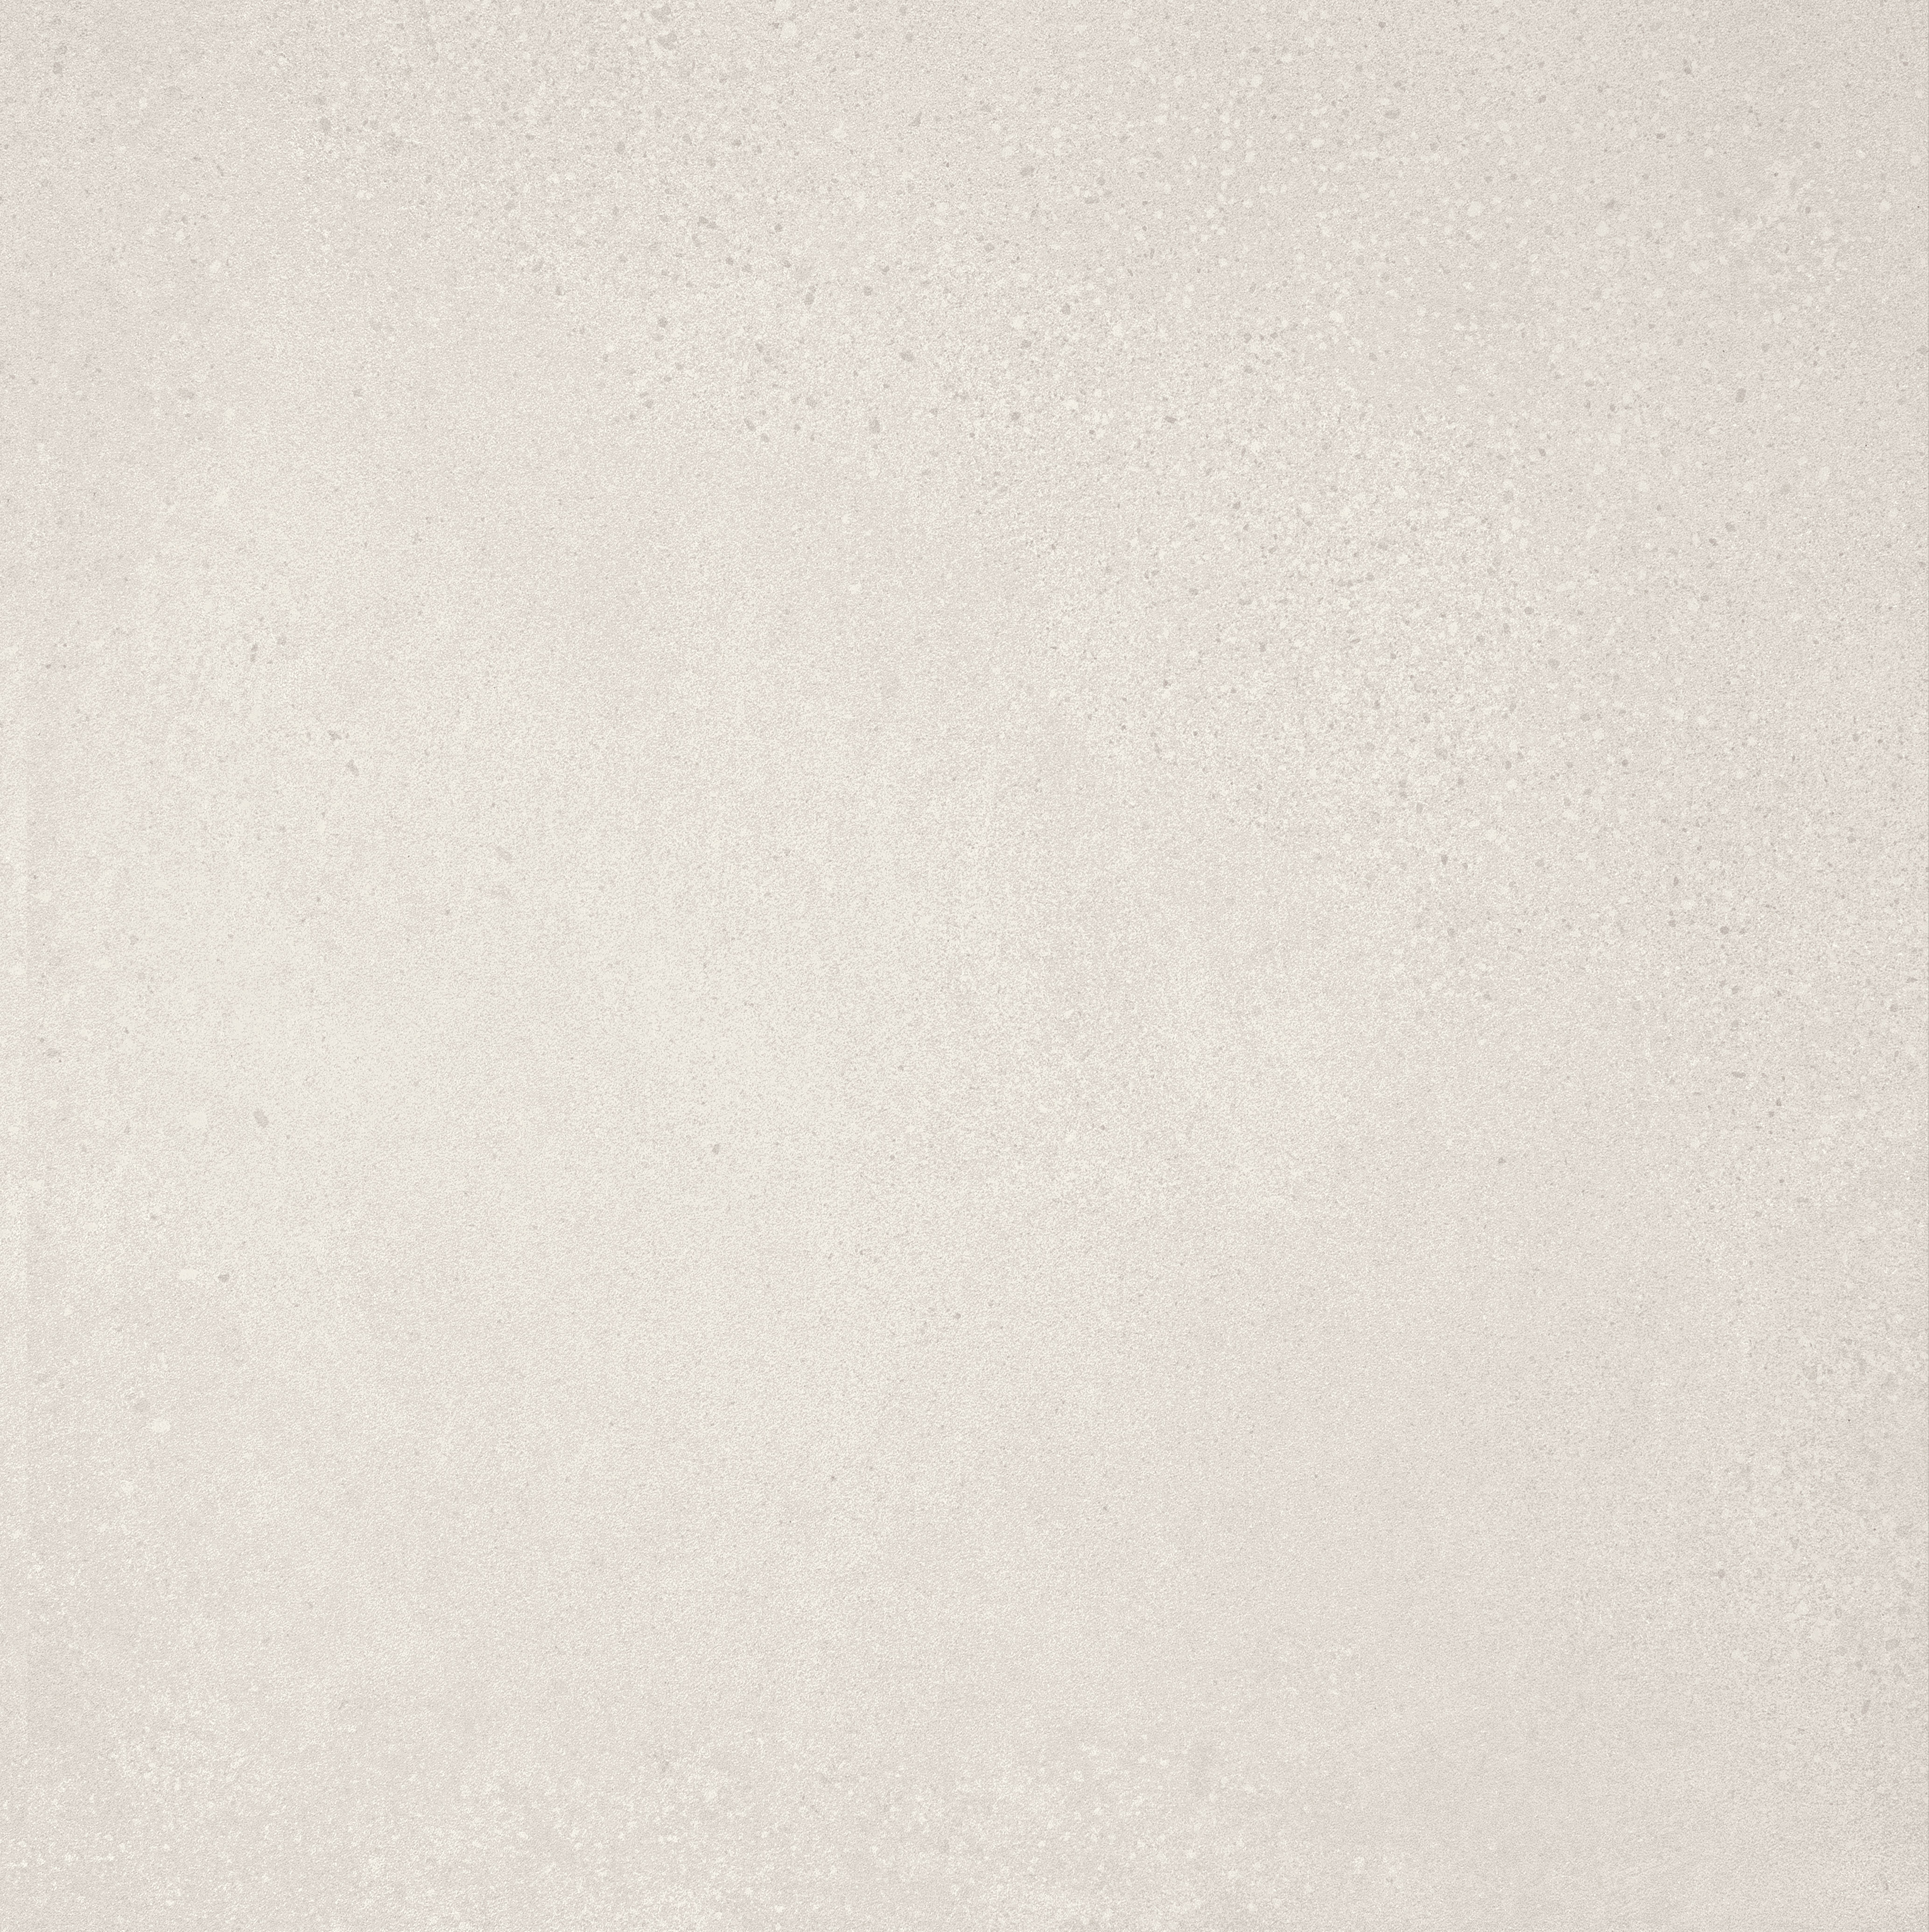 Marcacorona White Naturale – Matt F088 60x60cm rectified 9mm